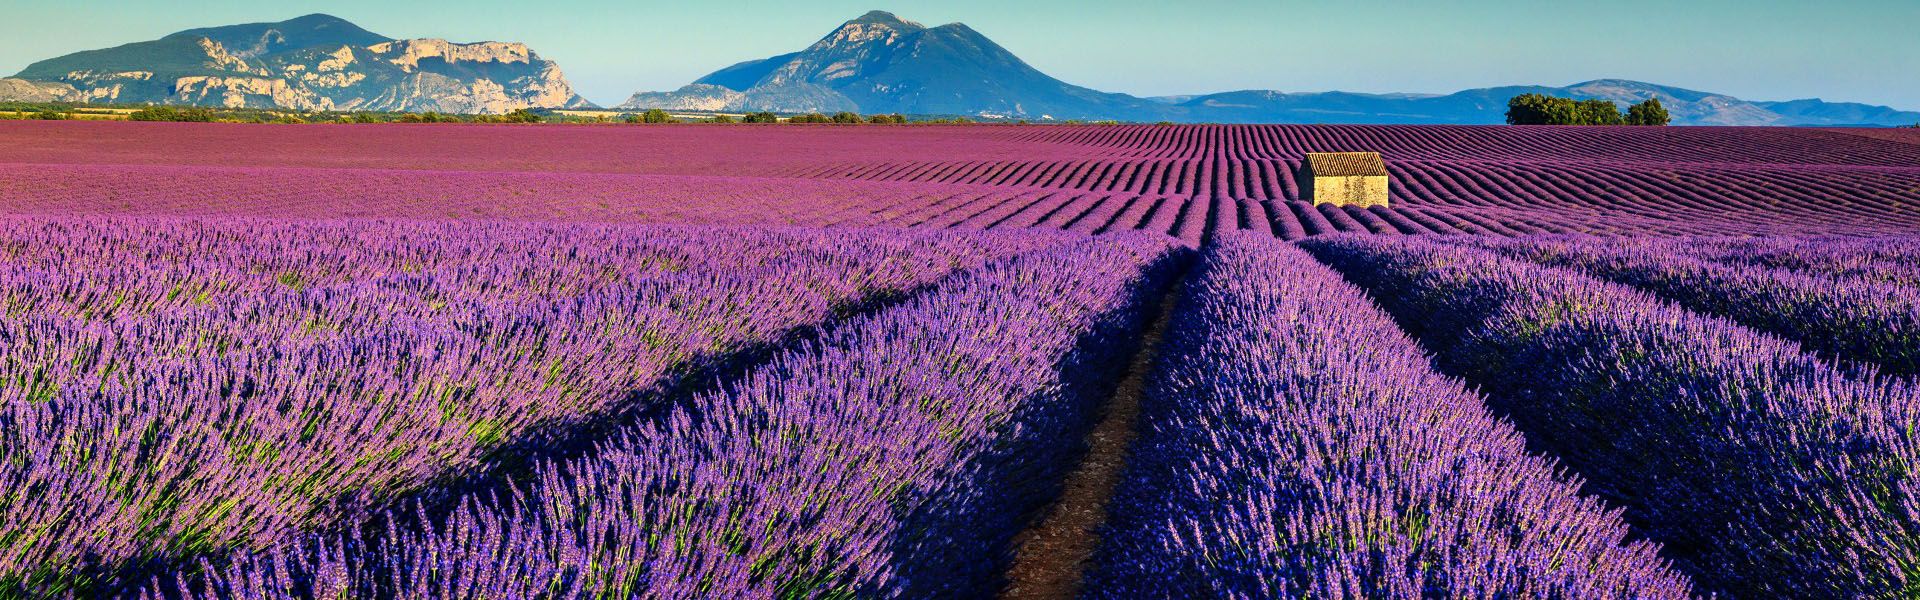 lavender-fields-france.pic-1.jpg